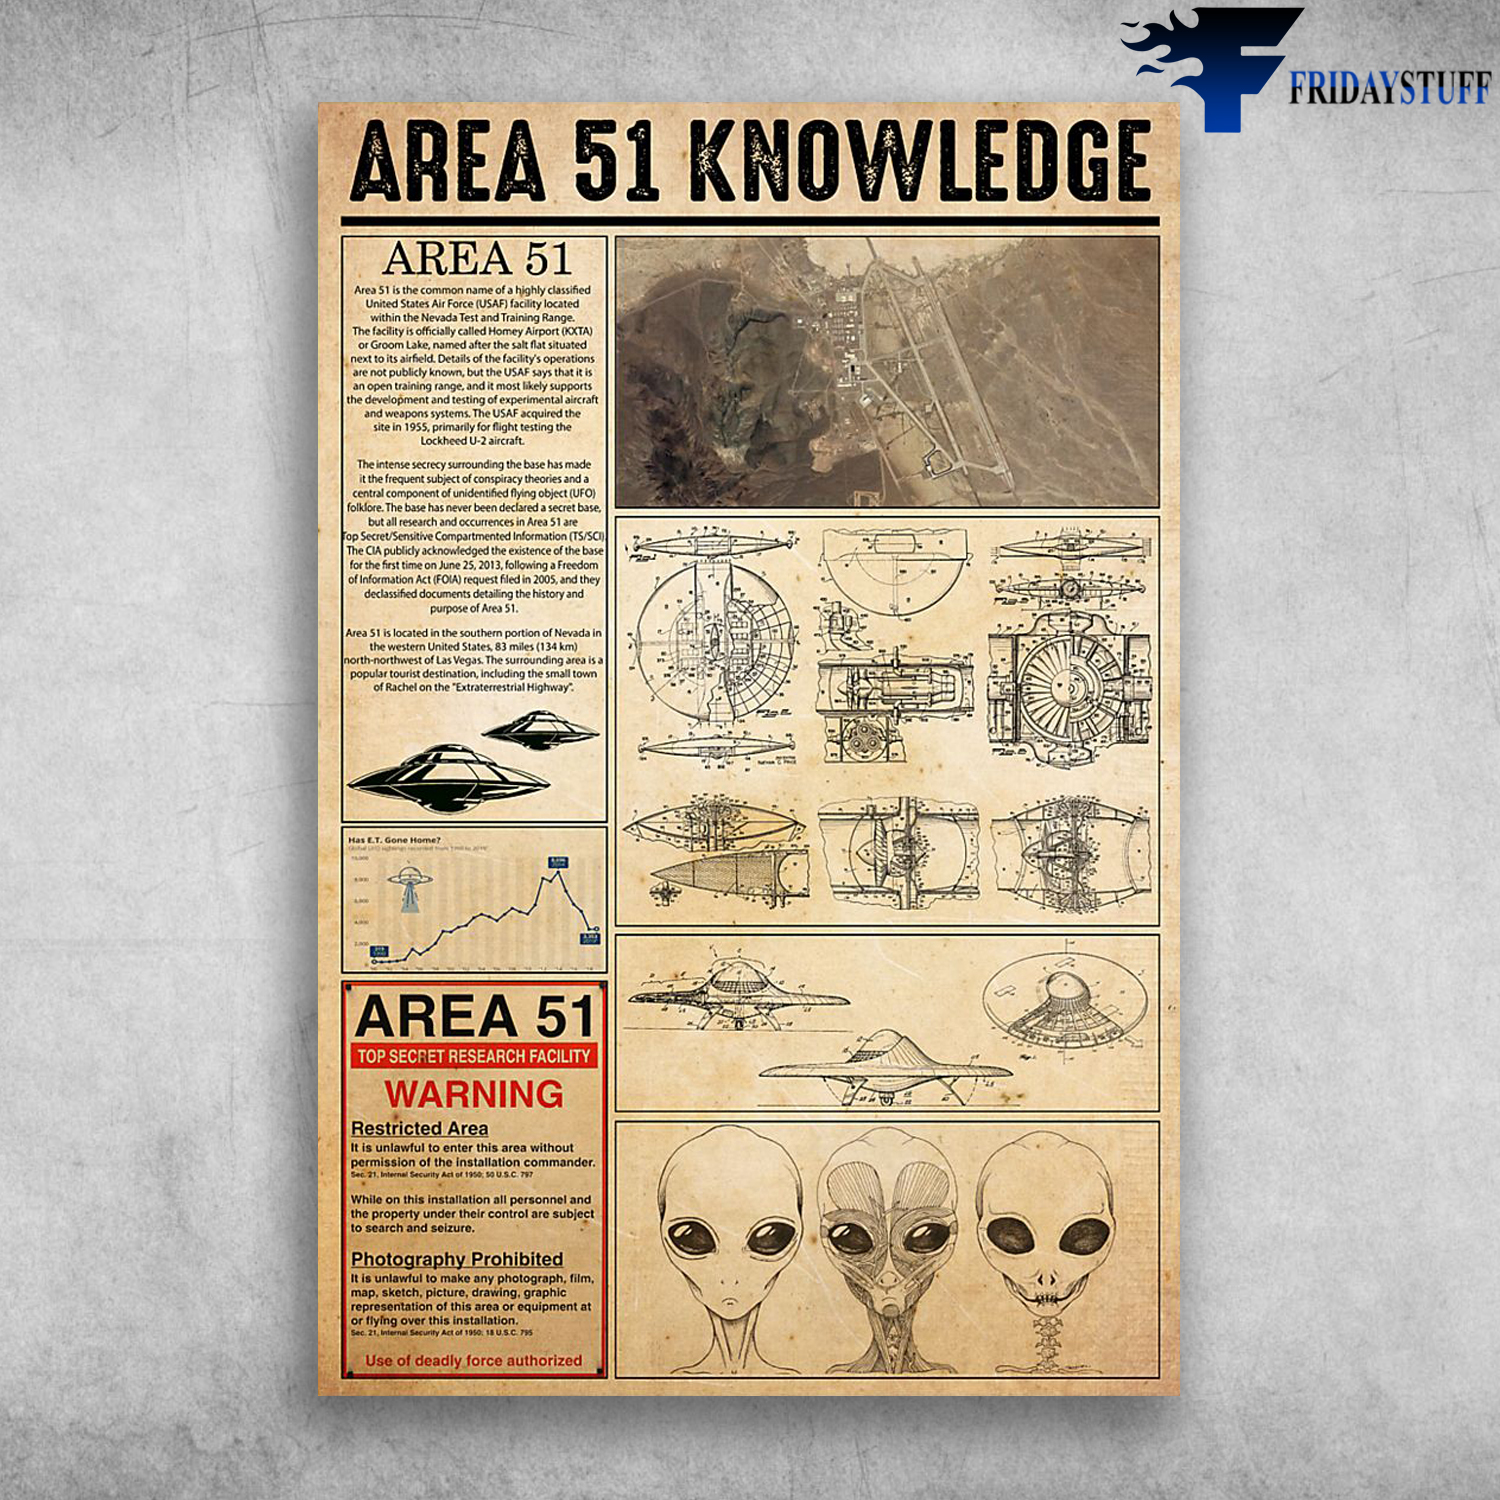 Area 51 Knowledge Area 51 Top Secret Research Facility